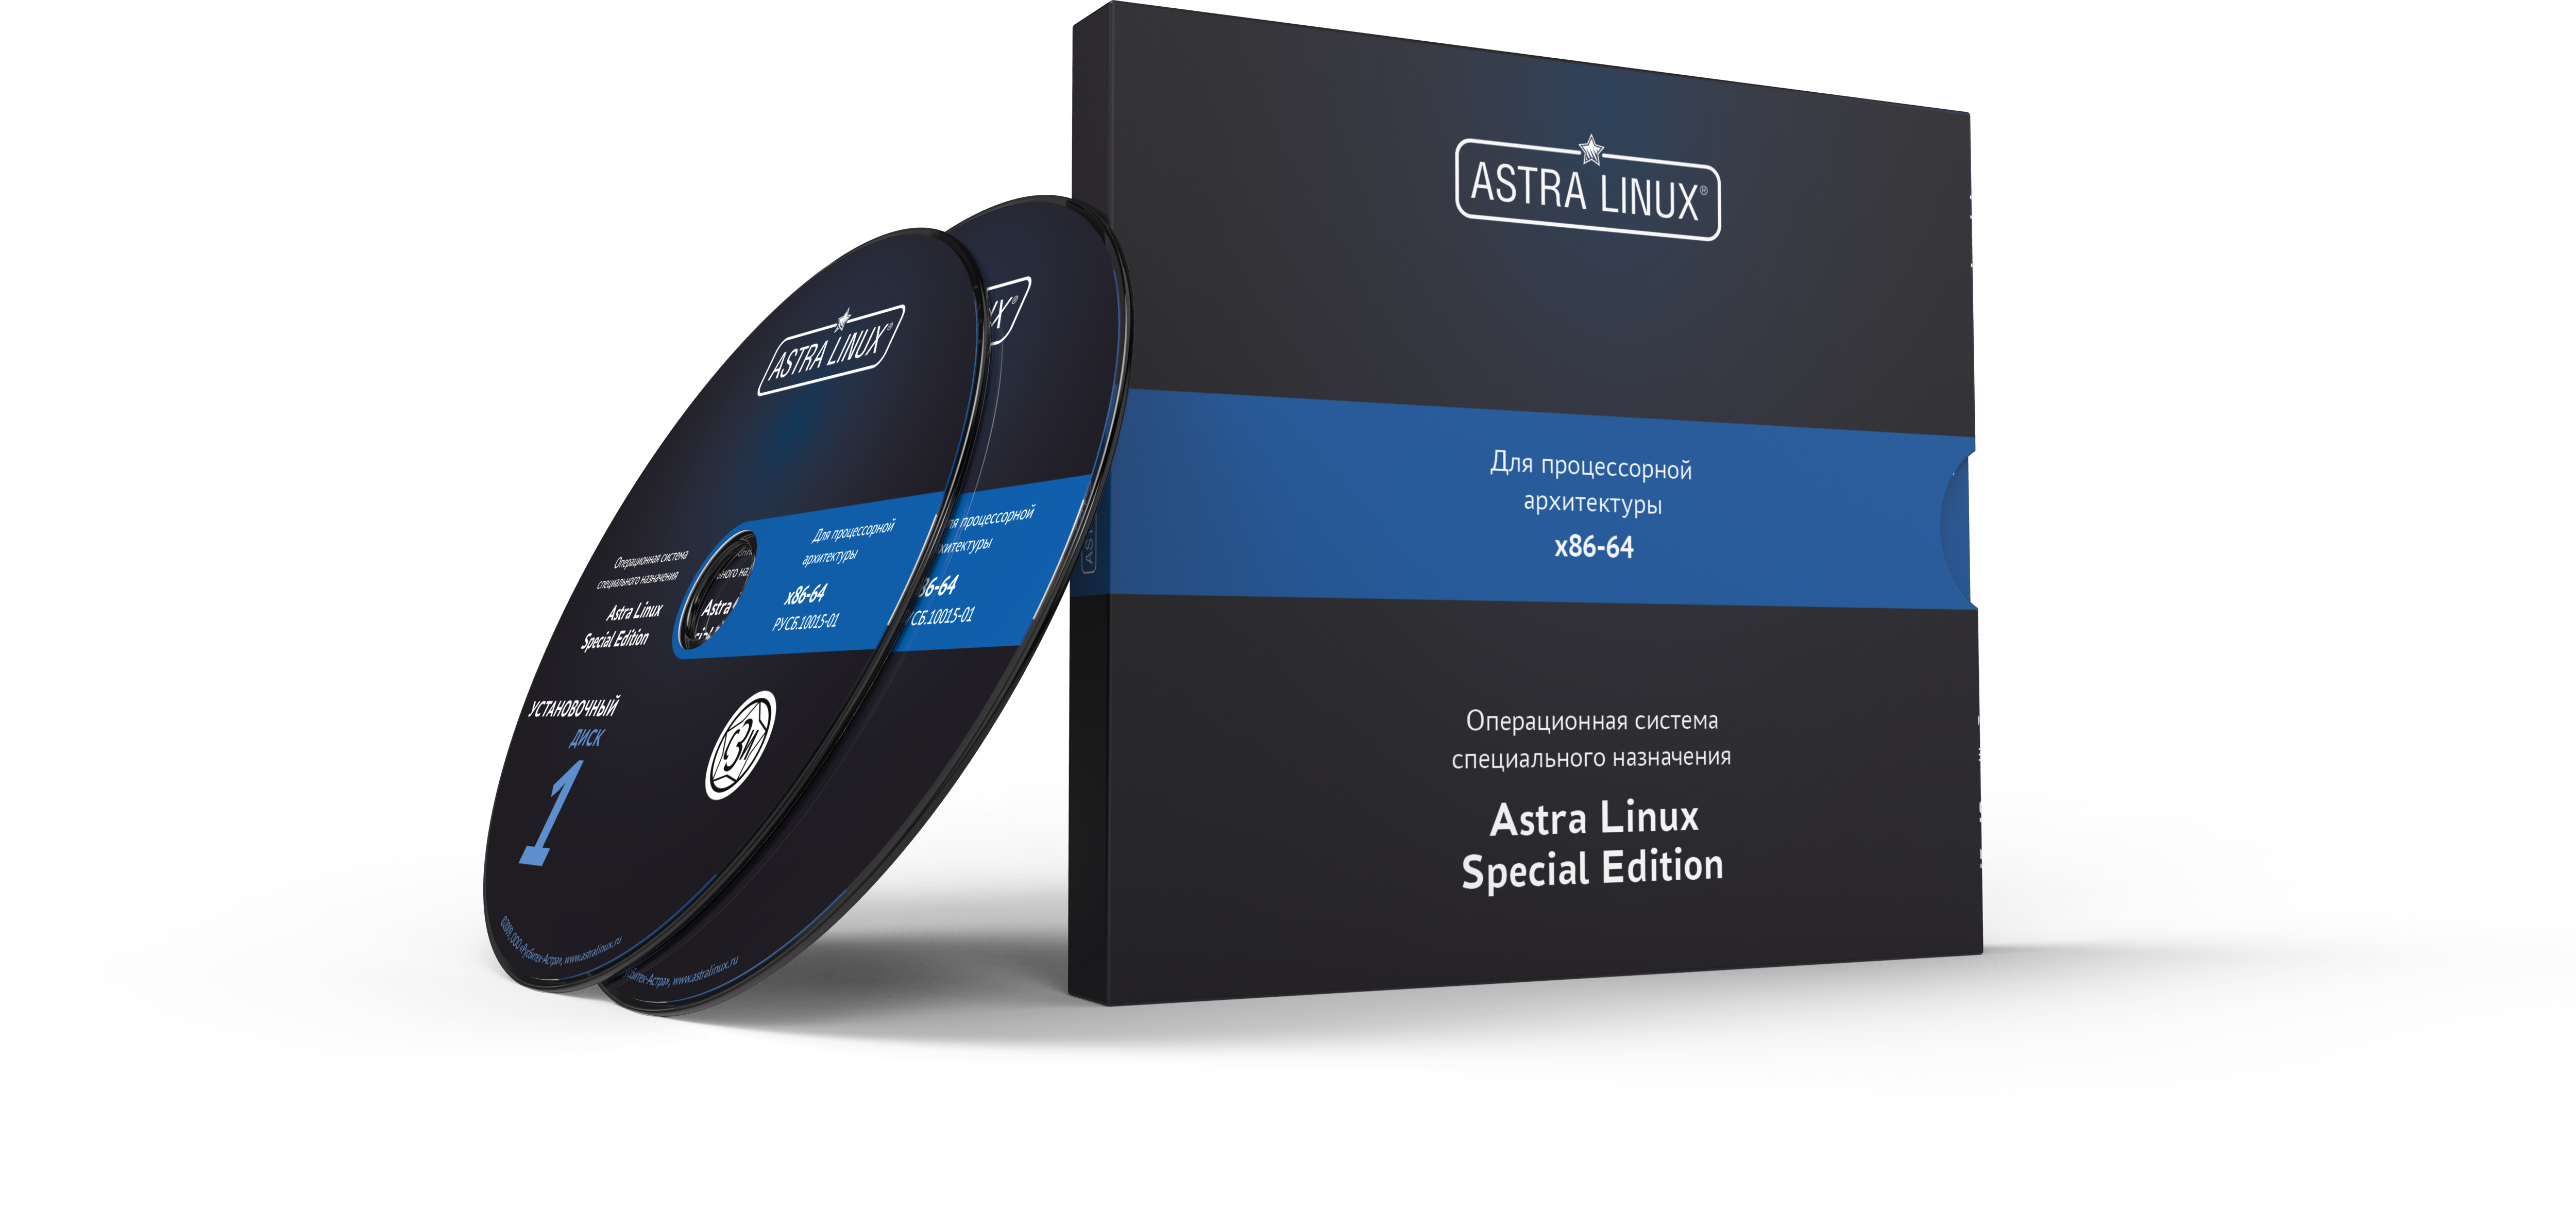 Astra Linux Special Edition 1.7 - Смоленск, "Максимальный", диск, без огр. срока, ТП "Стандарт" на 12 мес.